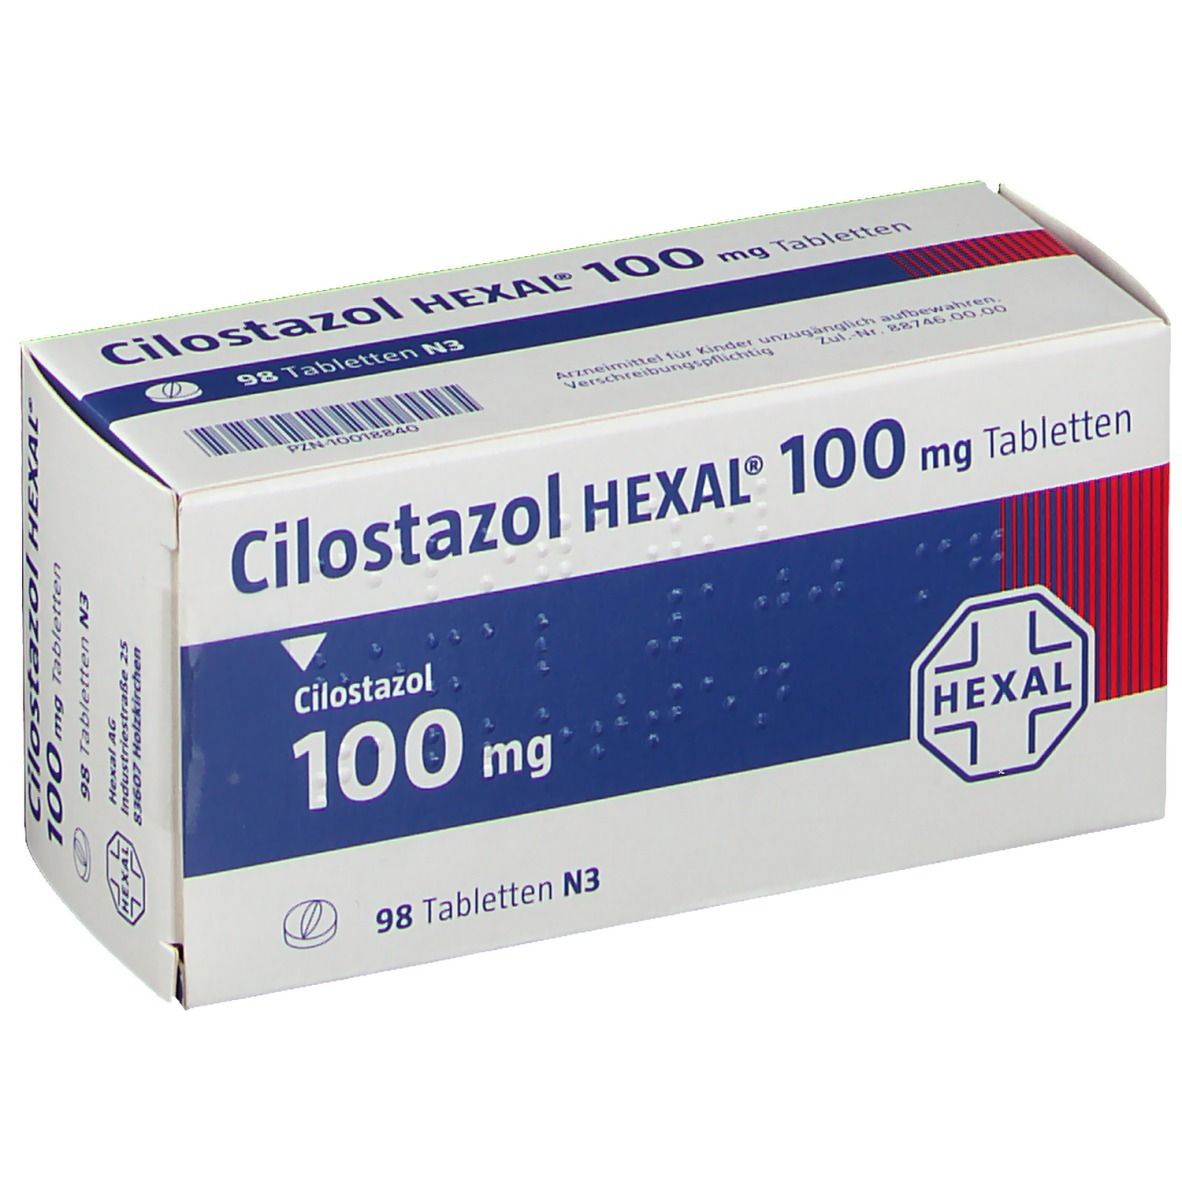 Cilostazol HEXAL® 100 mg